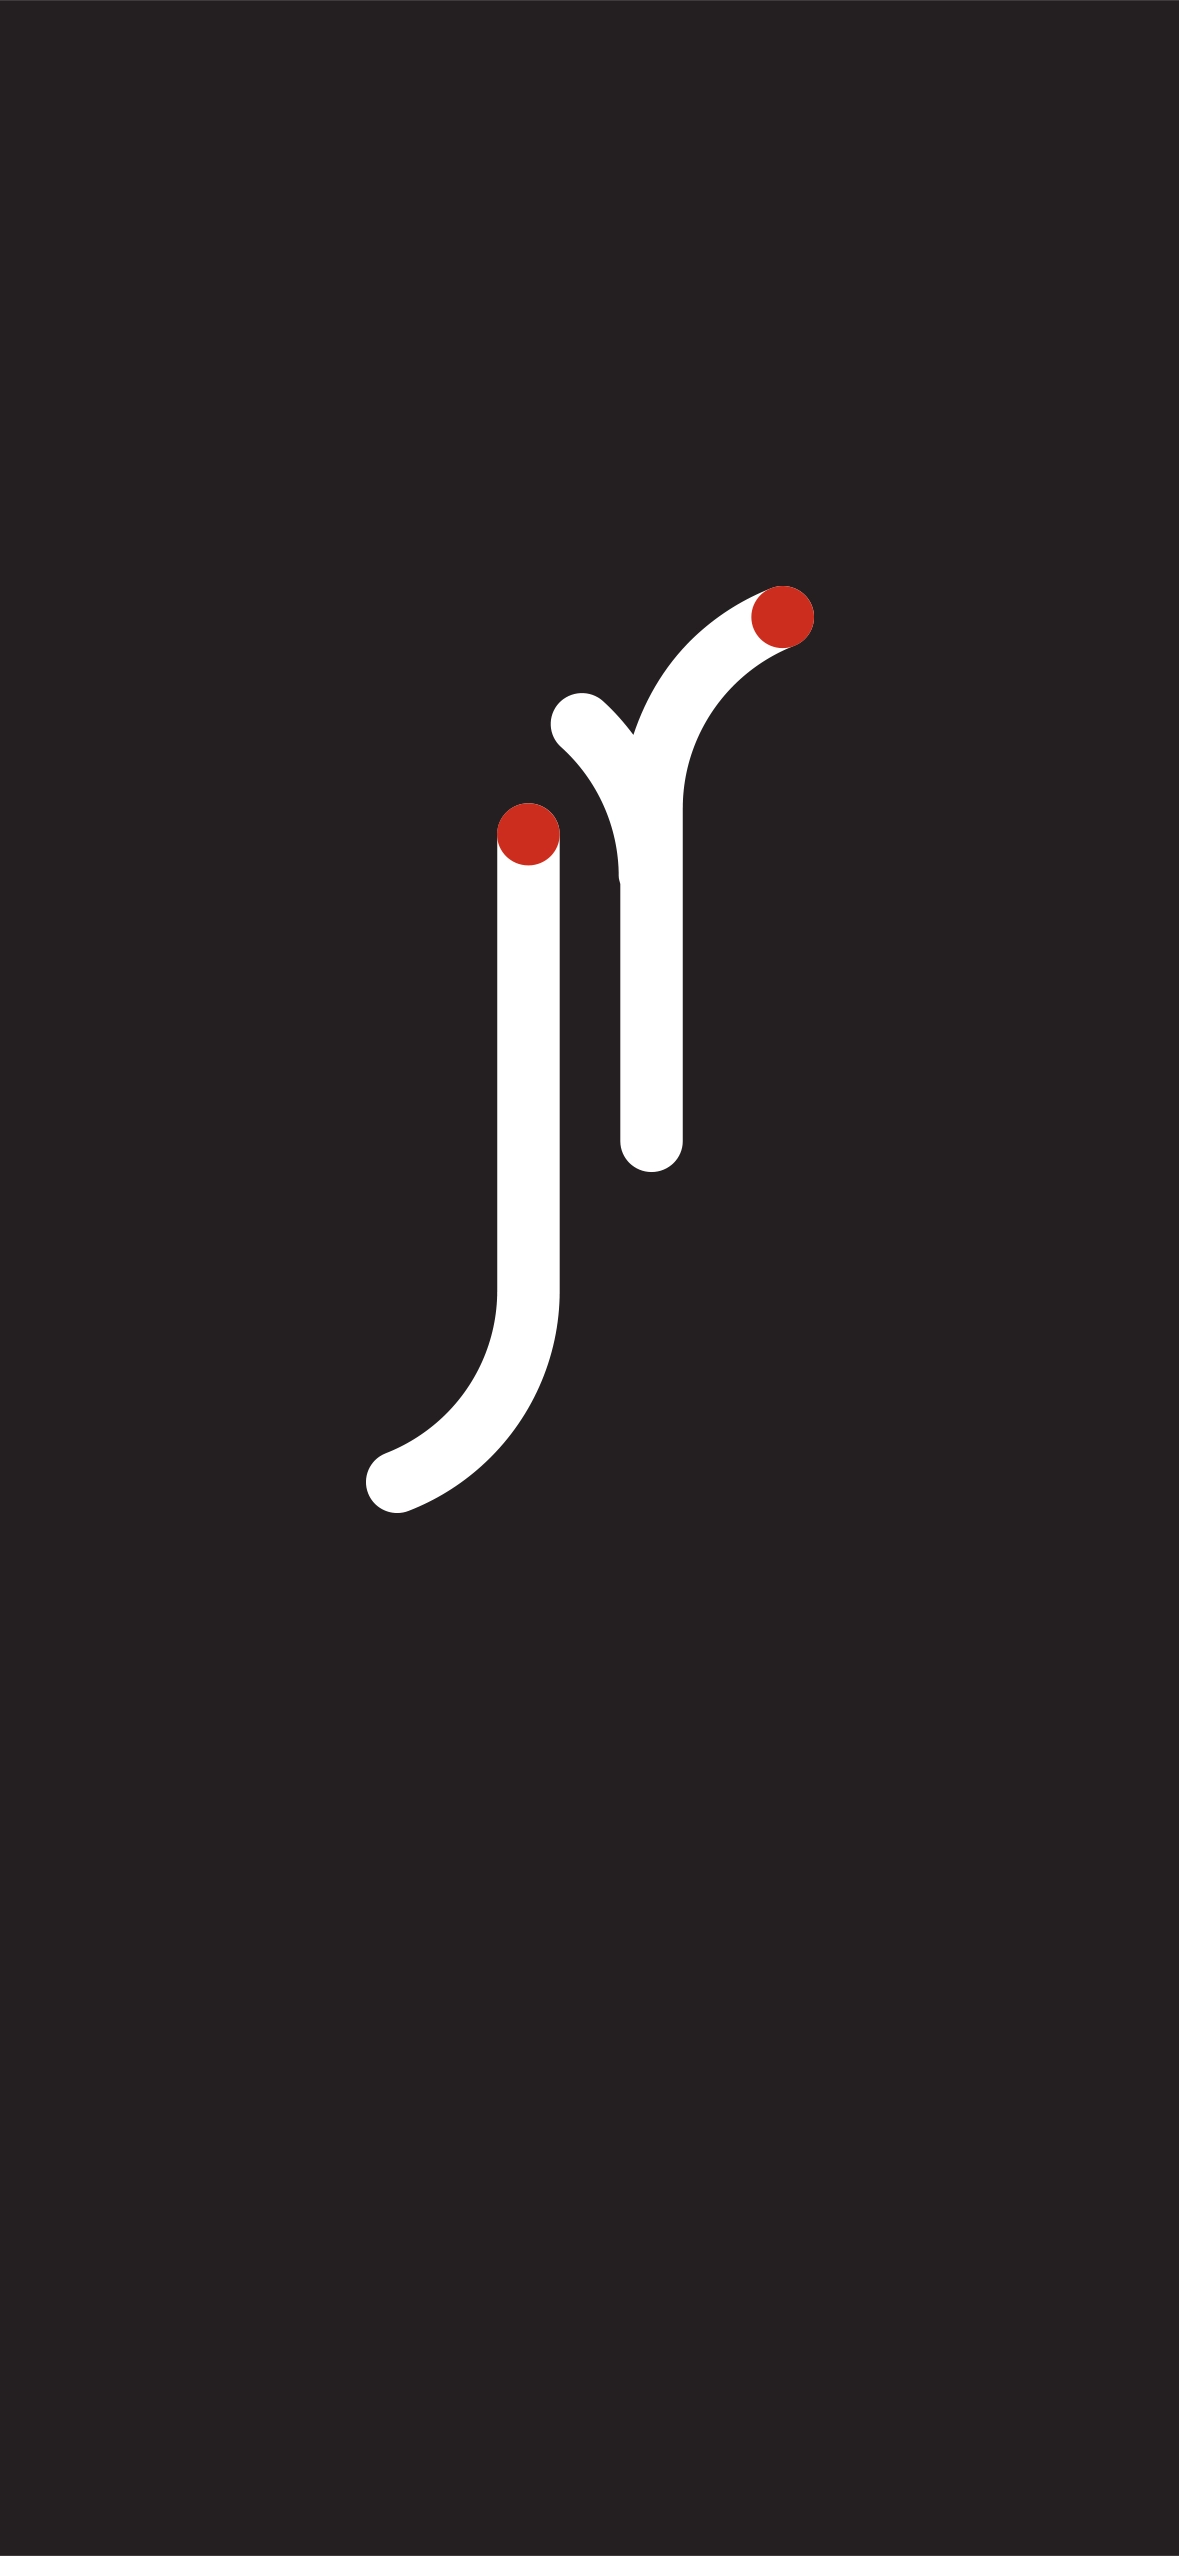 Forme blanche et rouge symbolisant les lettres J et R de Jocelyne resnaud sur fond noir